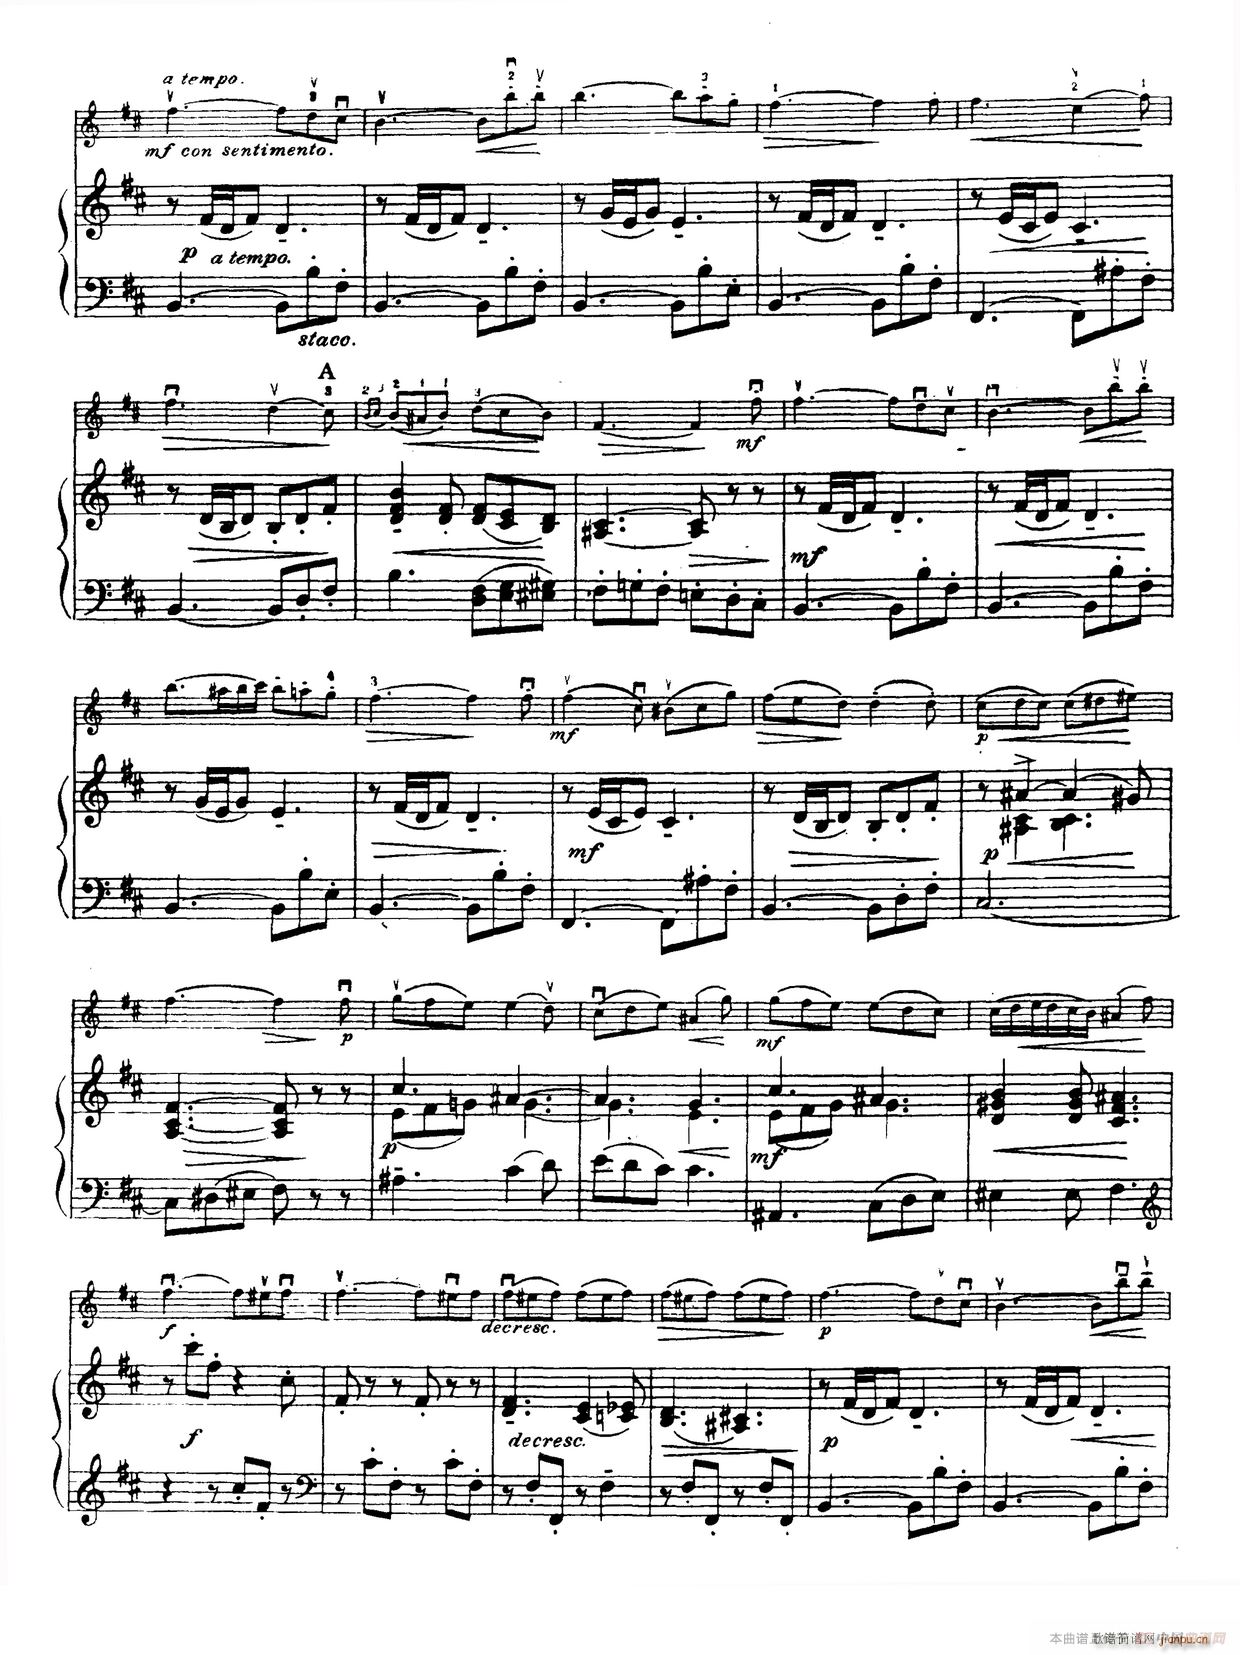 D大调学生协奏曲 塞茨作品第15号(小提琴谱)10